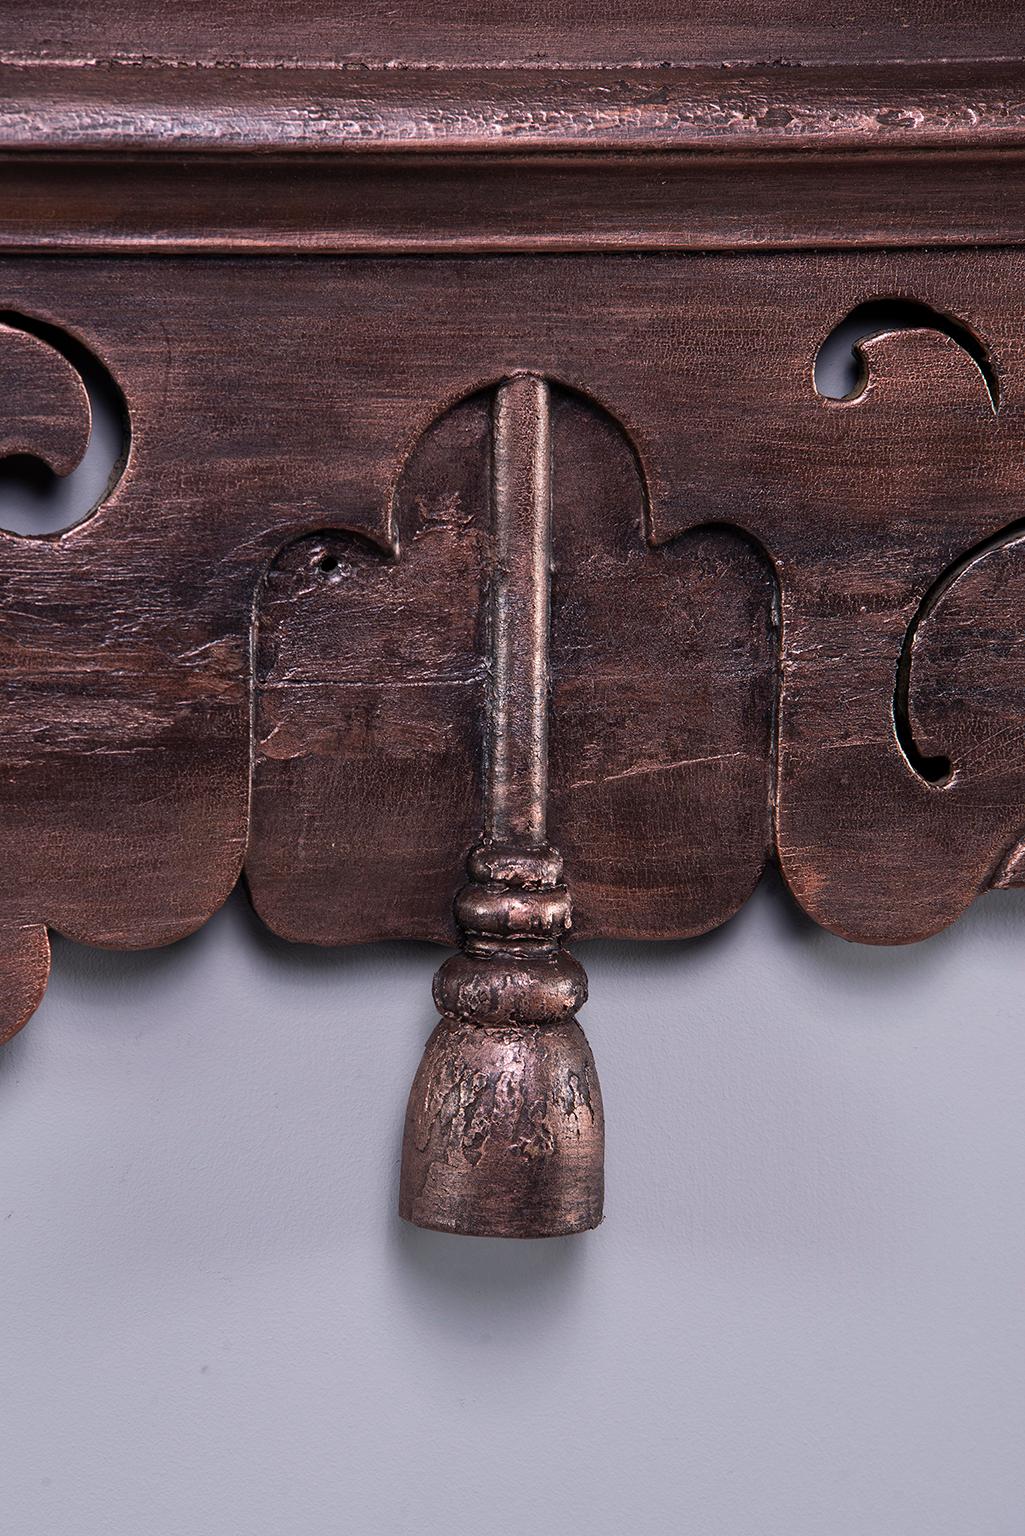 Belgian Reticulated Over-Mantle Piece with Metallic Bronze Paint